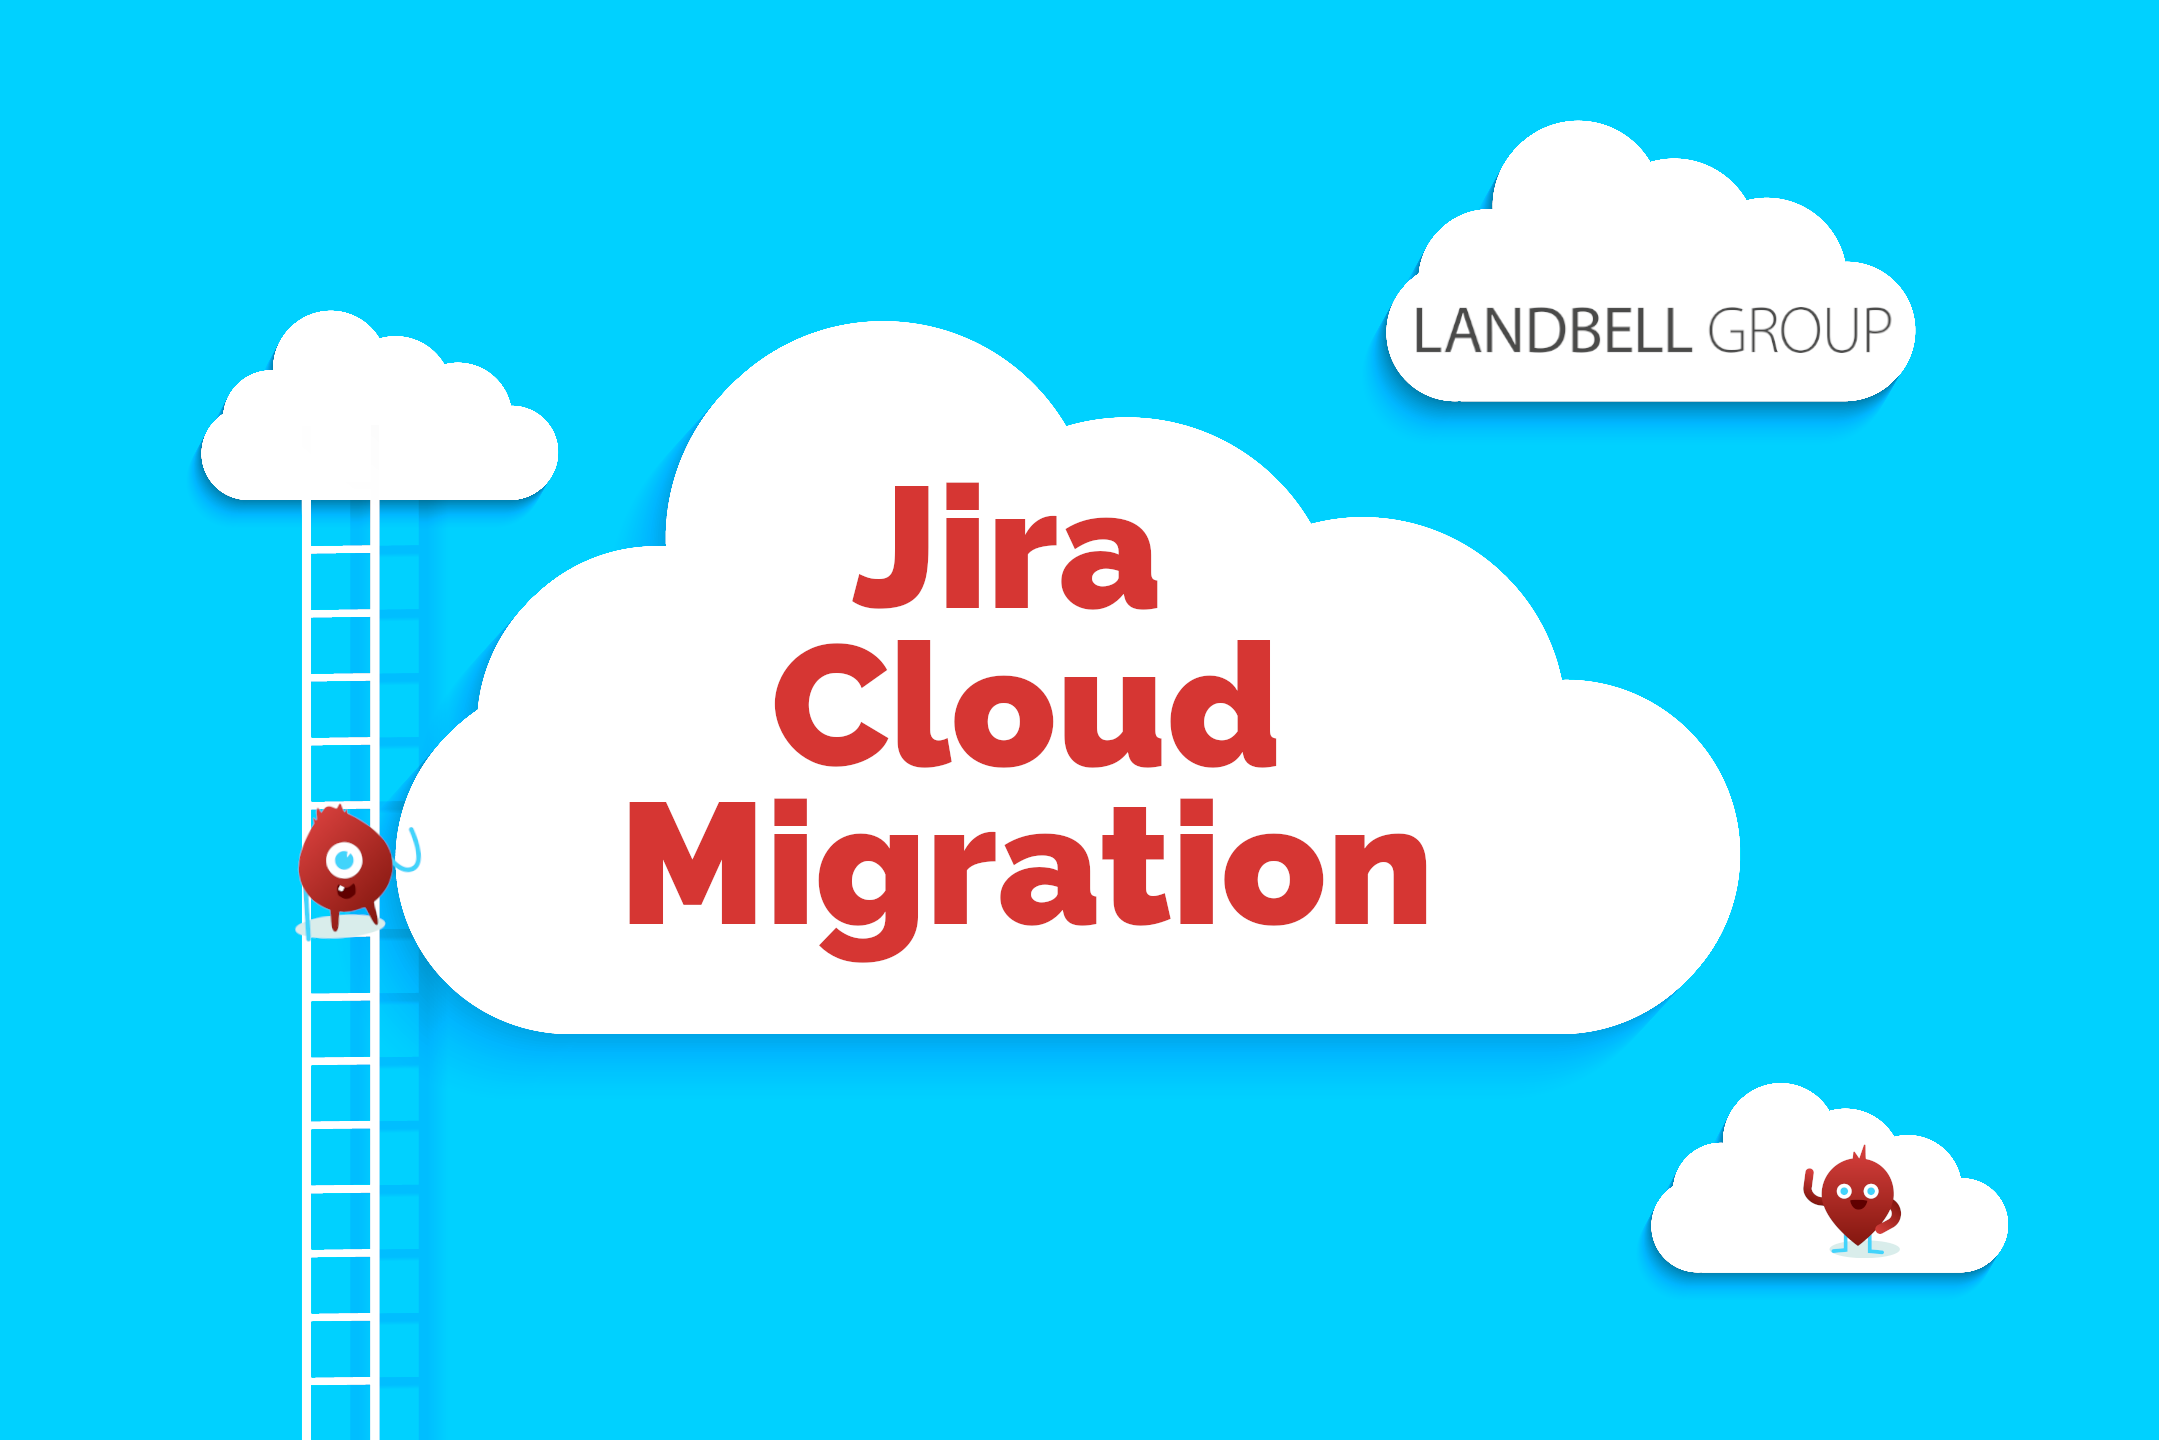 Jira Cloud Migration at Landbell Group